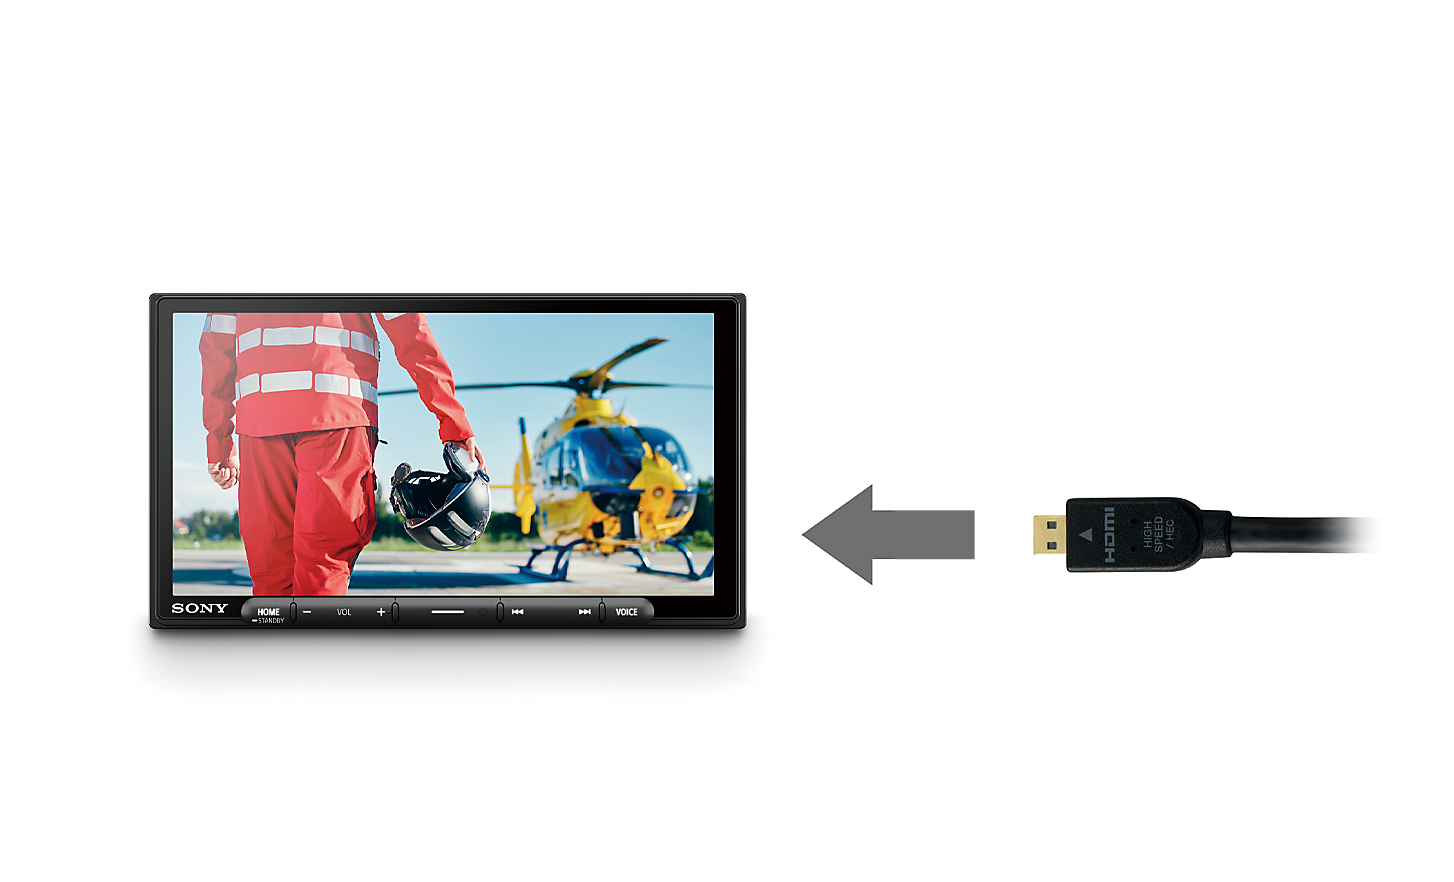 Obraz kabla HDMI ze strzałką skierowaną w stronę XAV-AX6050 z pilotem i helikopterem na ekranie